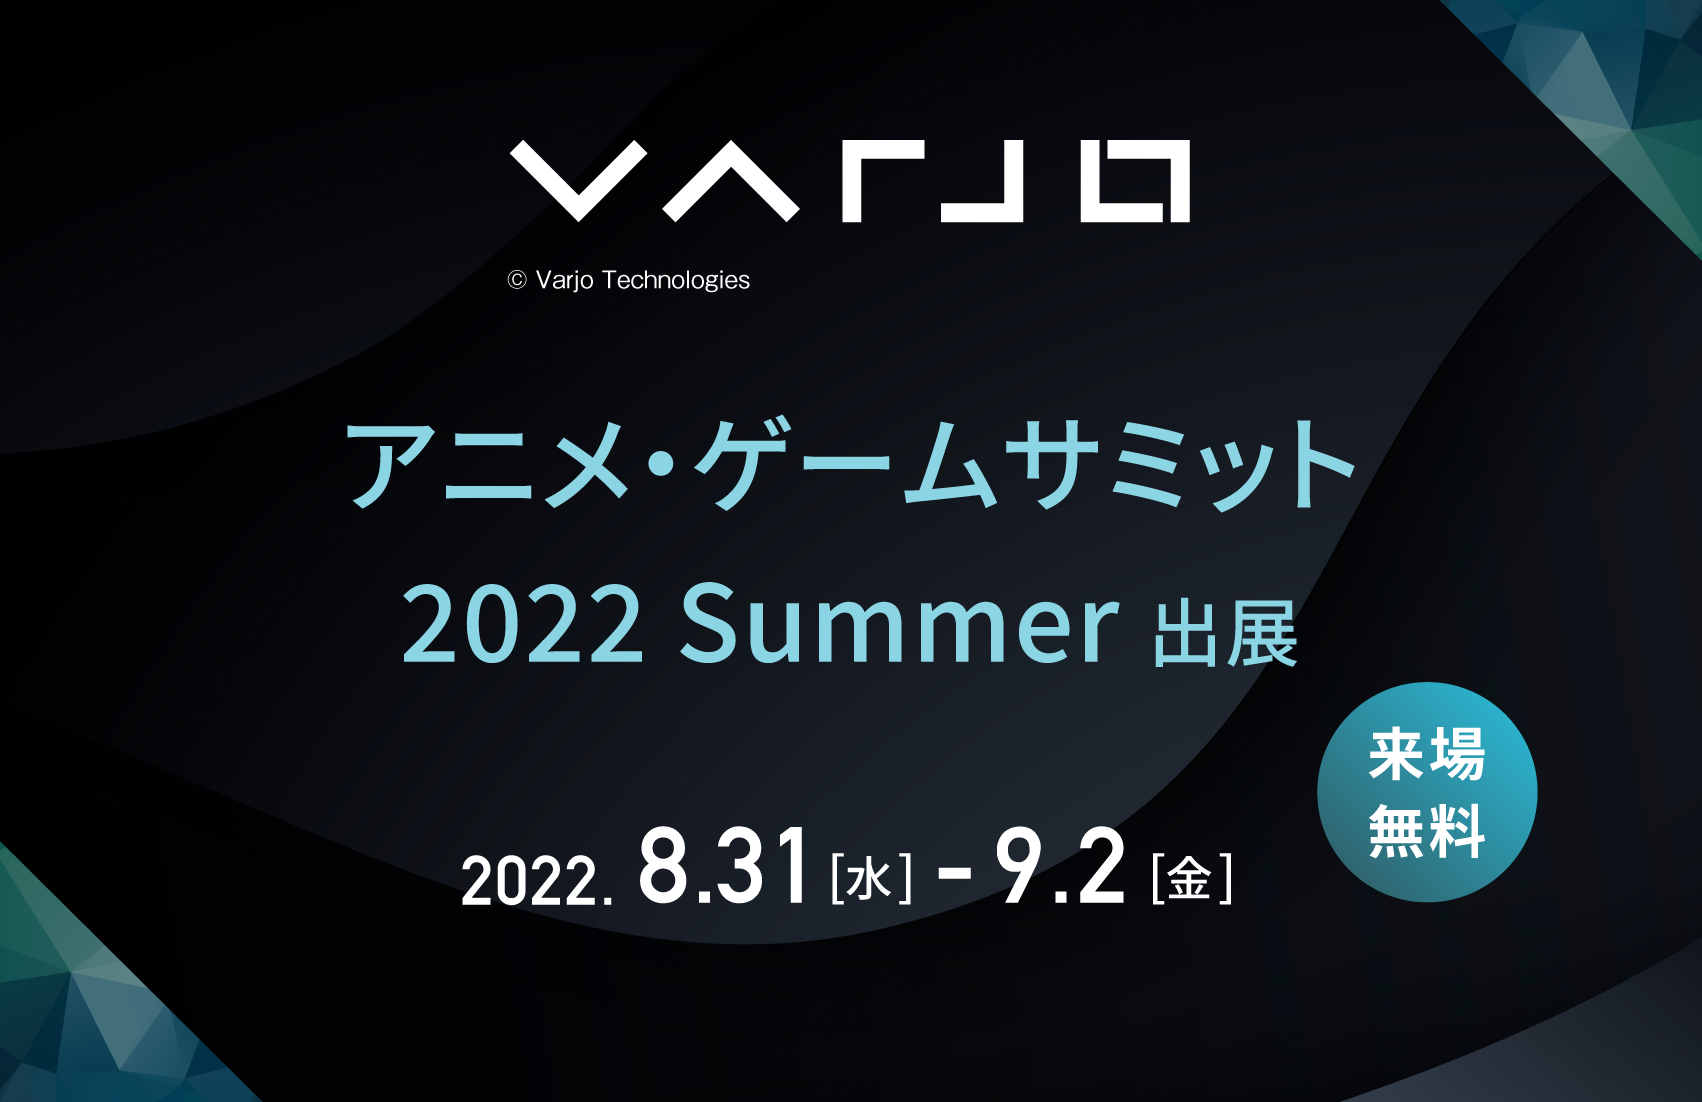  Varjo XR-3を「アニメ・ゲームサミット 2022 Summer」に出展いたします